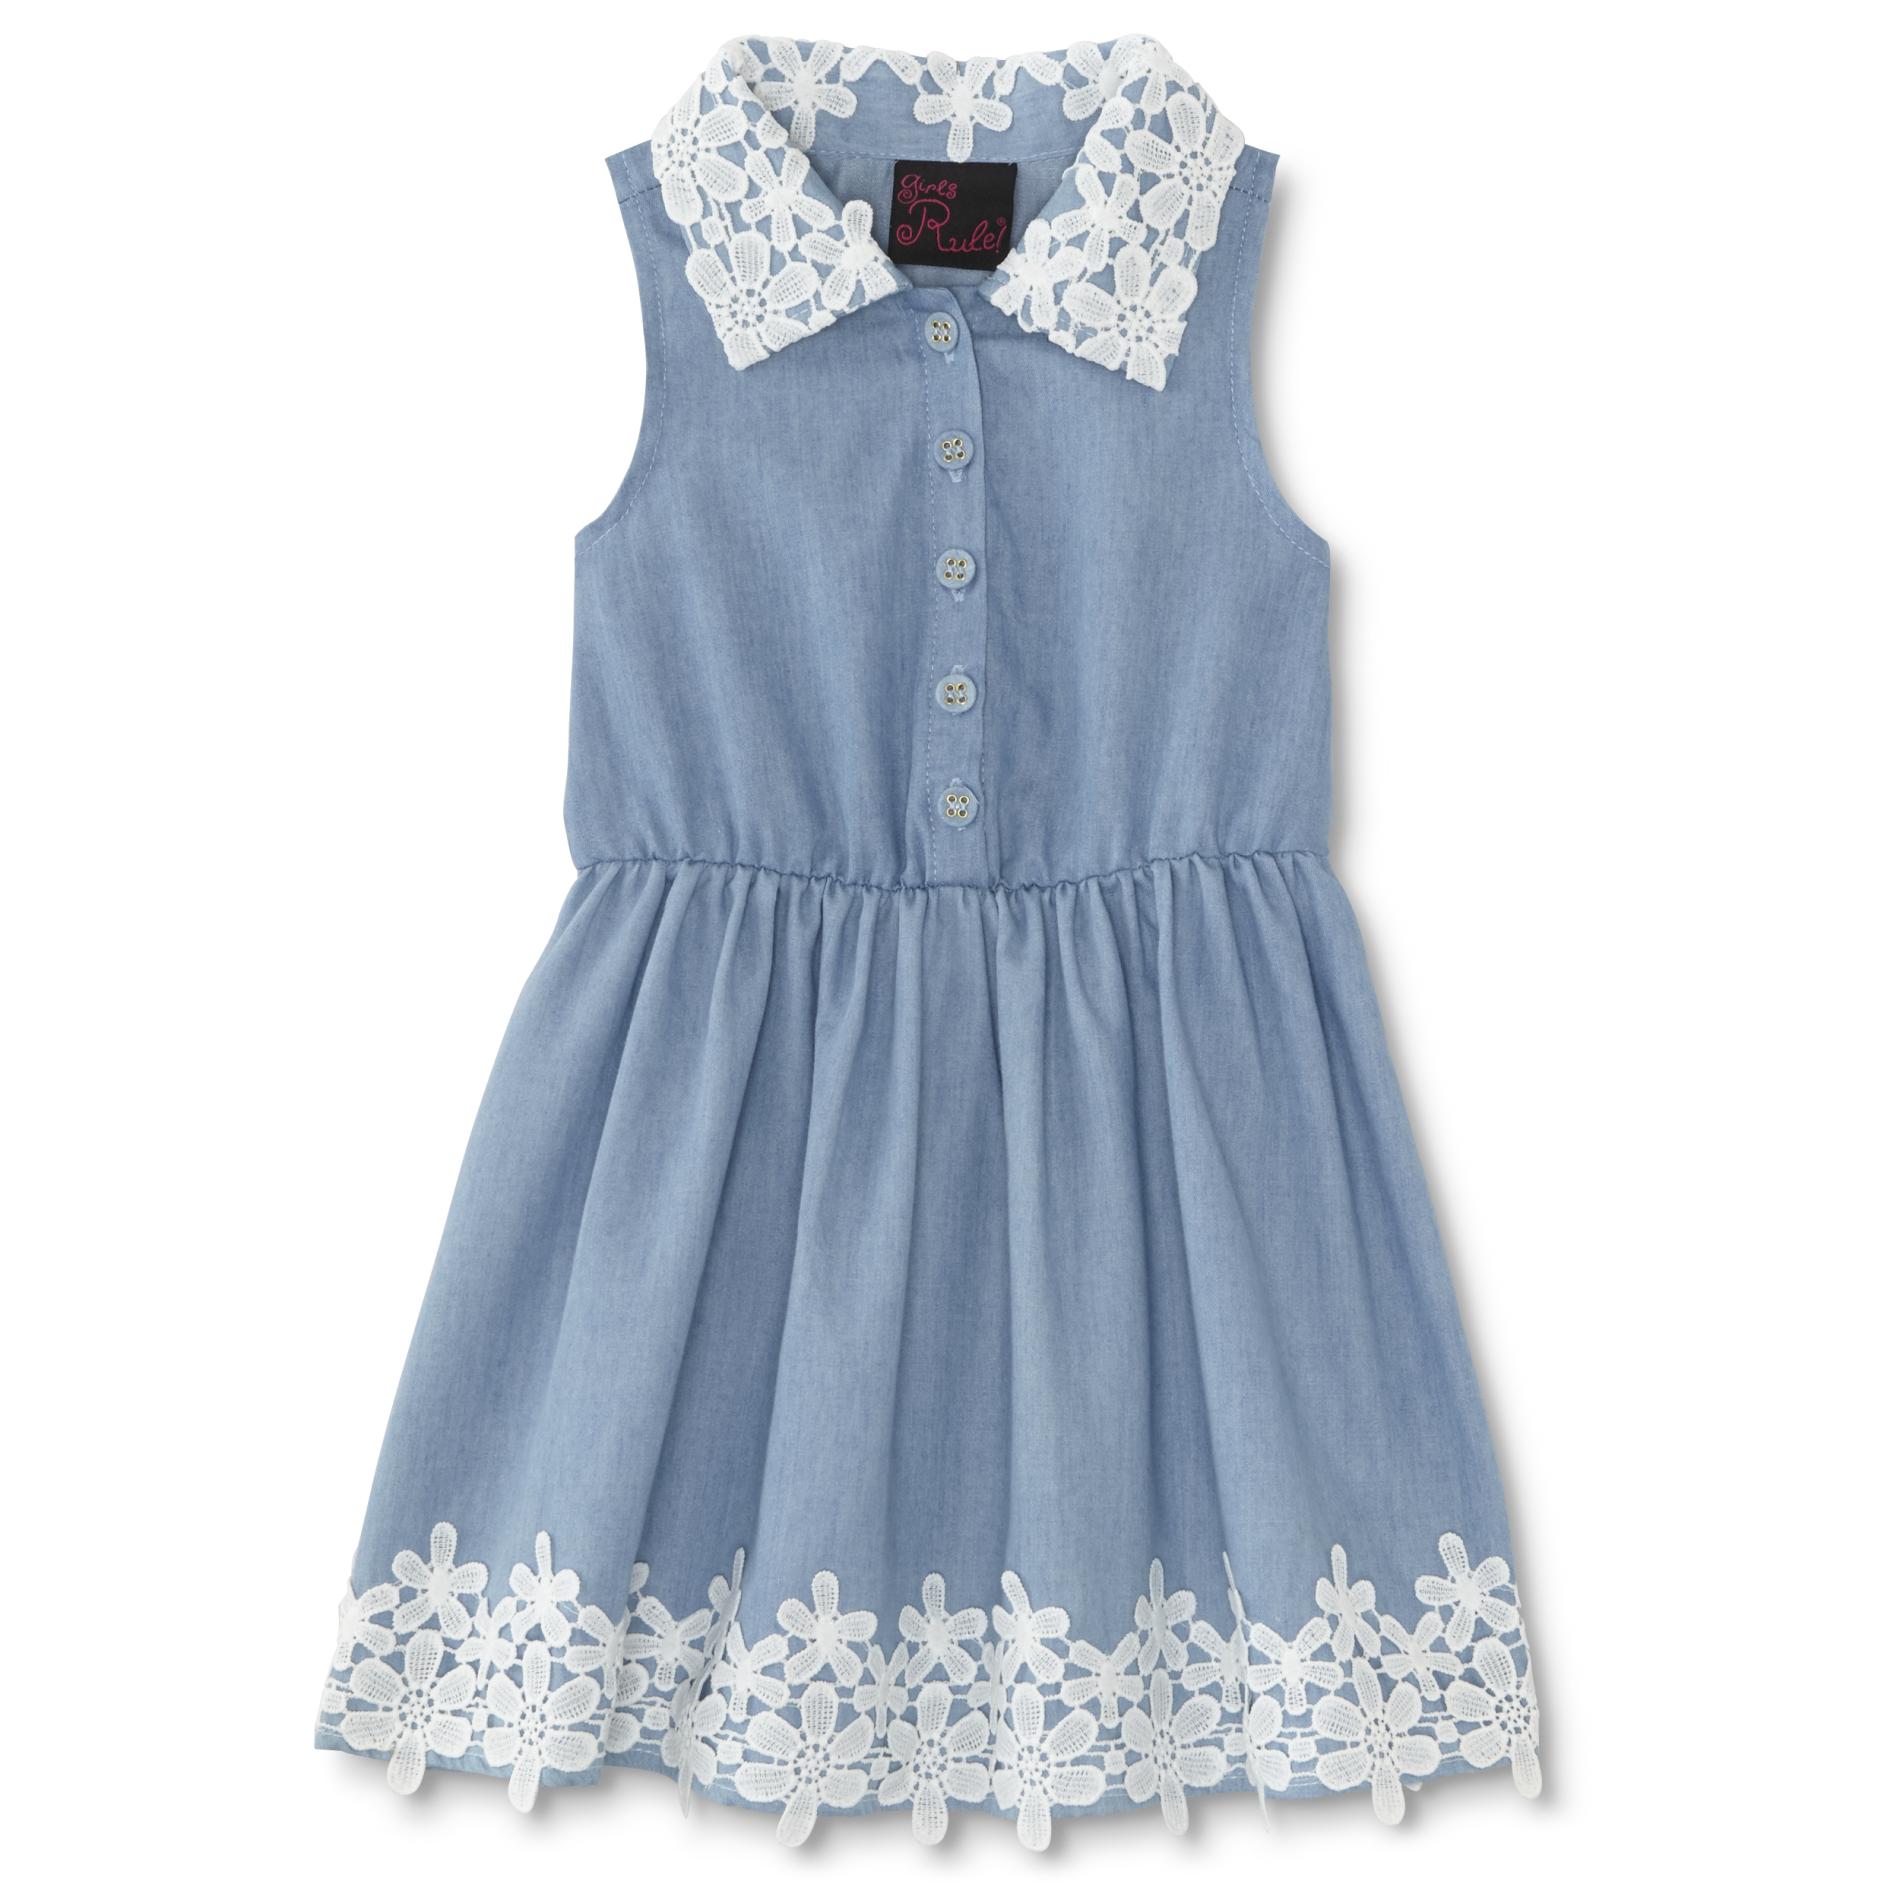 Girls Rule Infant & Toddler Girl's Sleeveless Chambray Dress